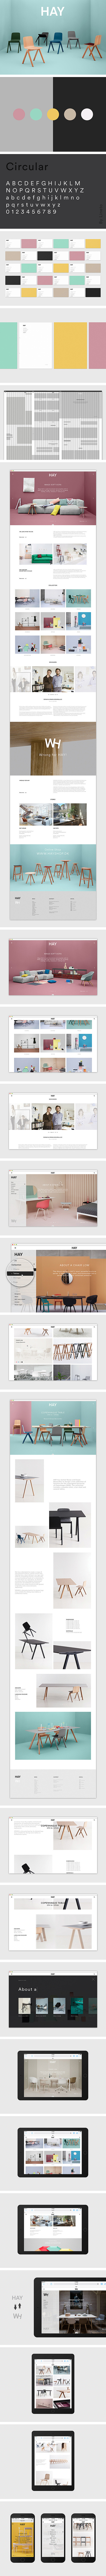 HAY家具设计网站 - WEB Insp...